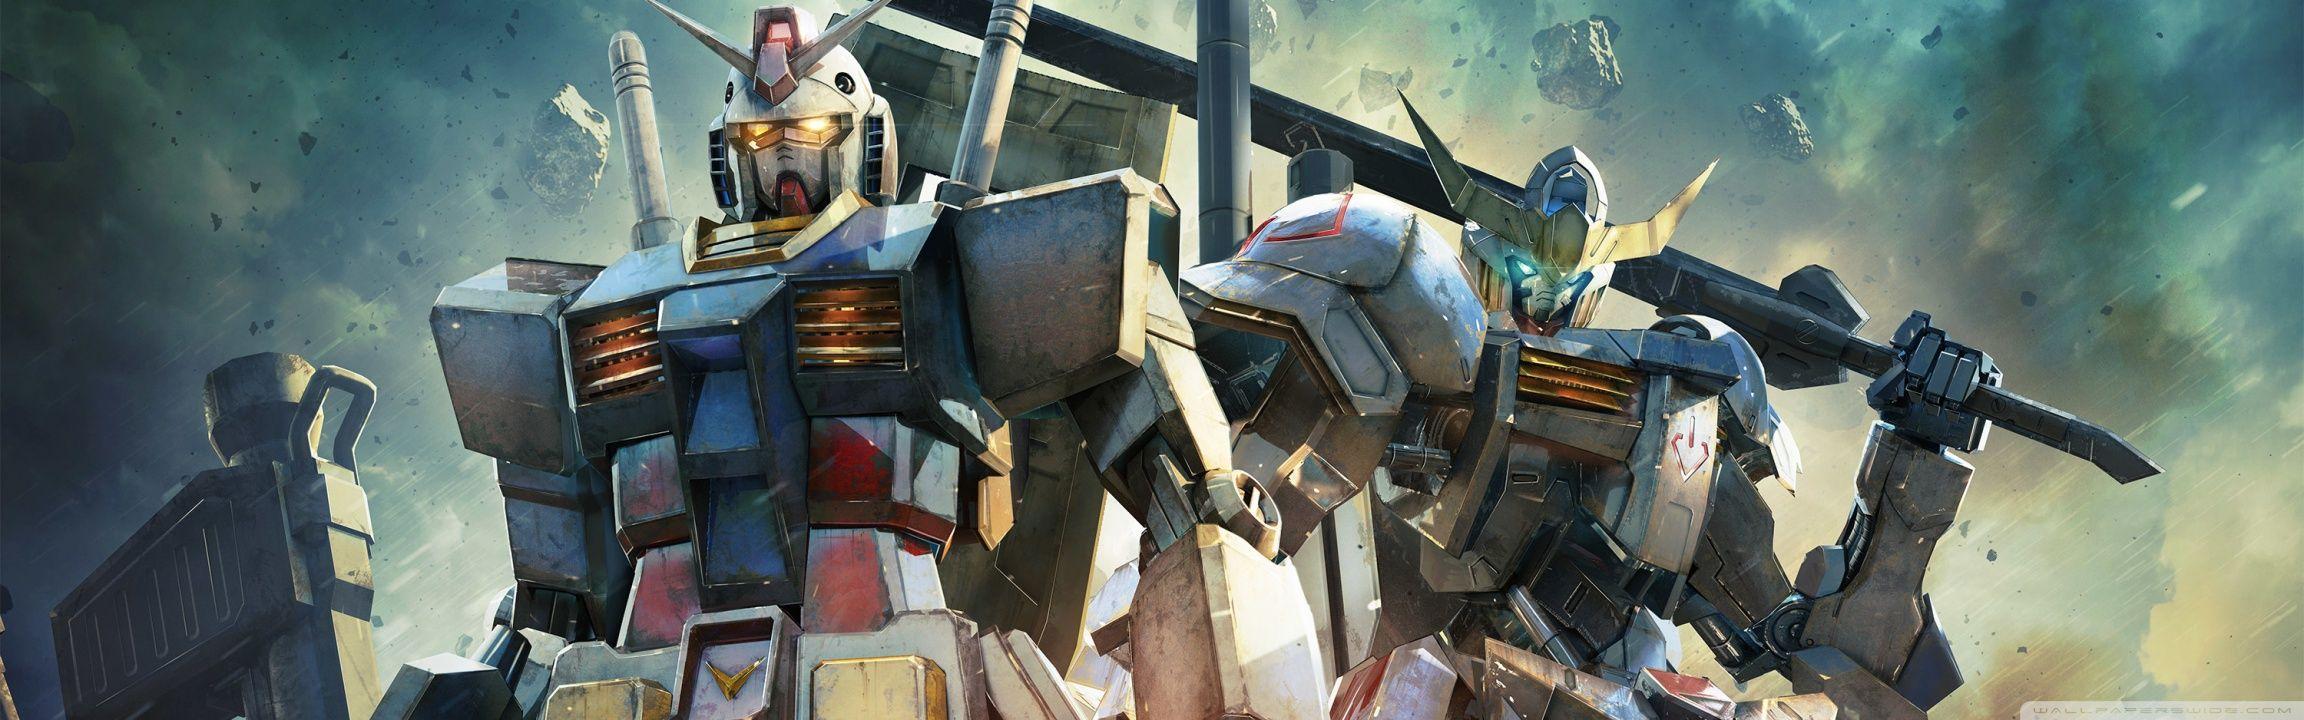 Gundam Versus Video Game HD desktop wallpaper, Widescreen, High